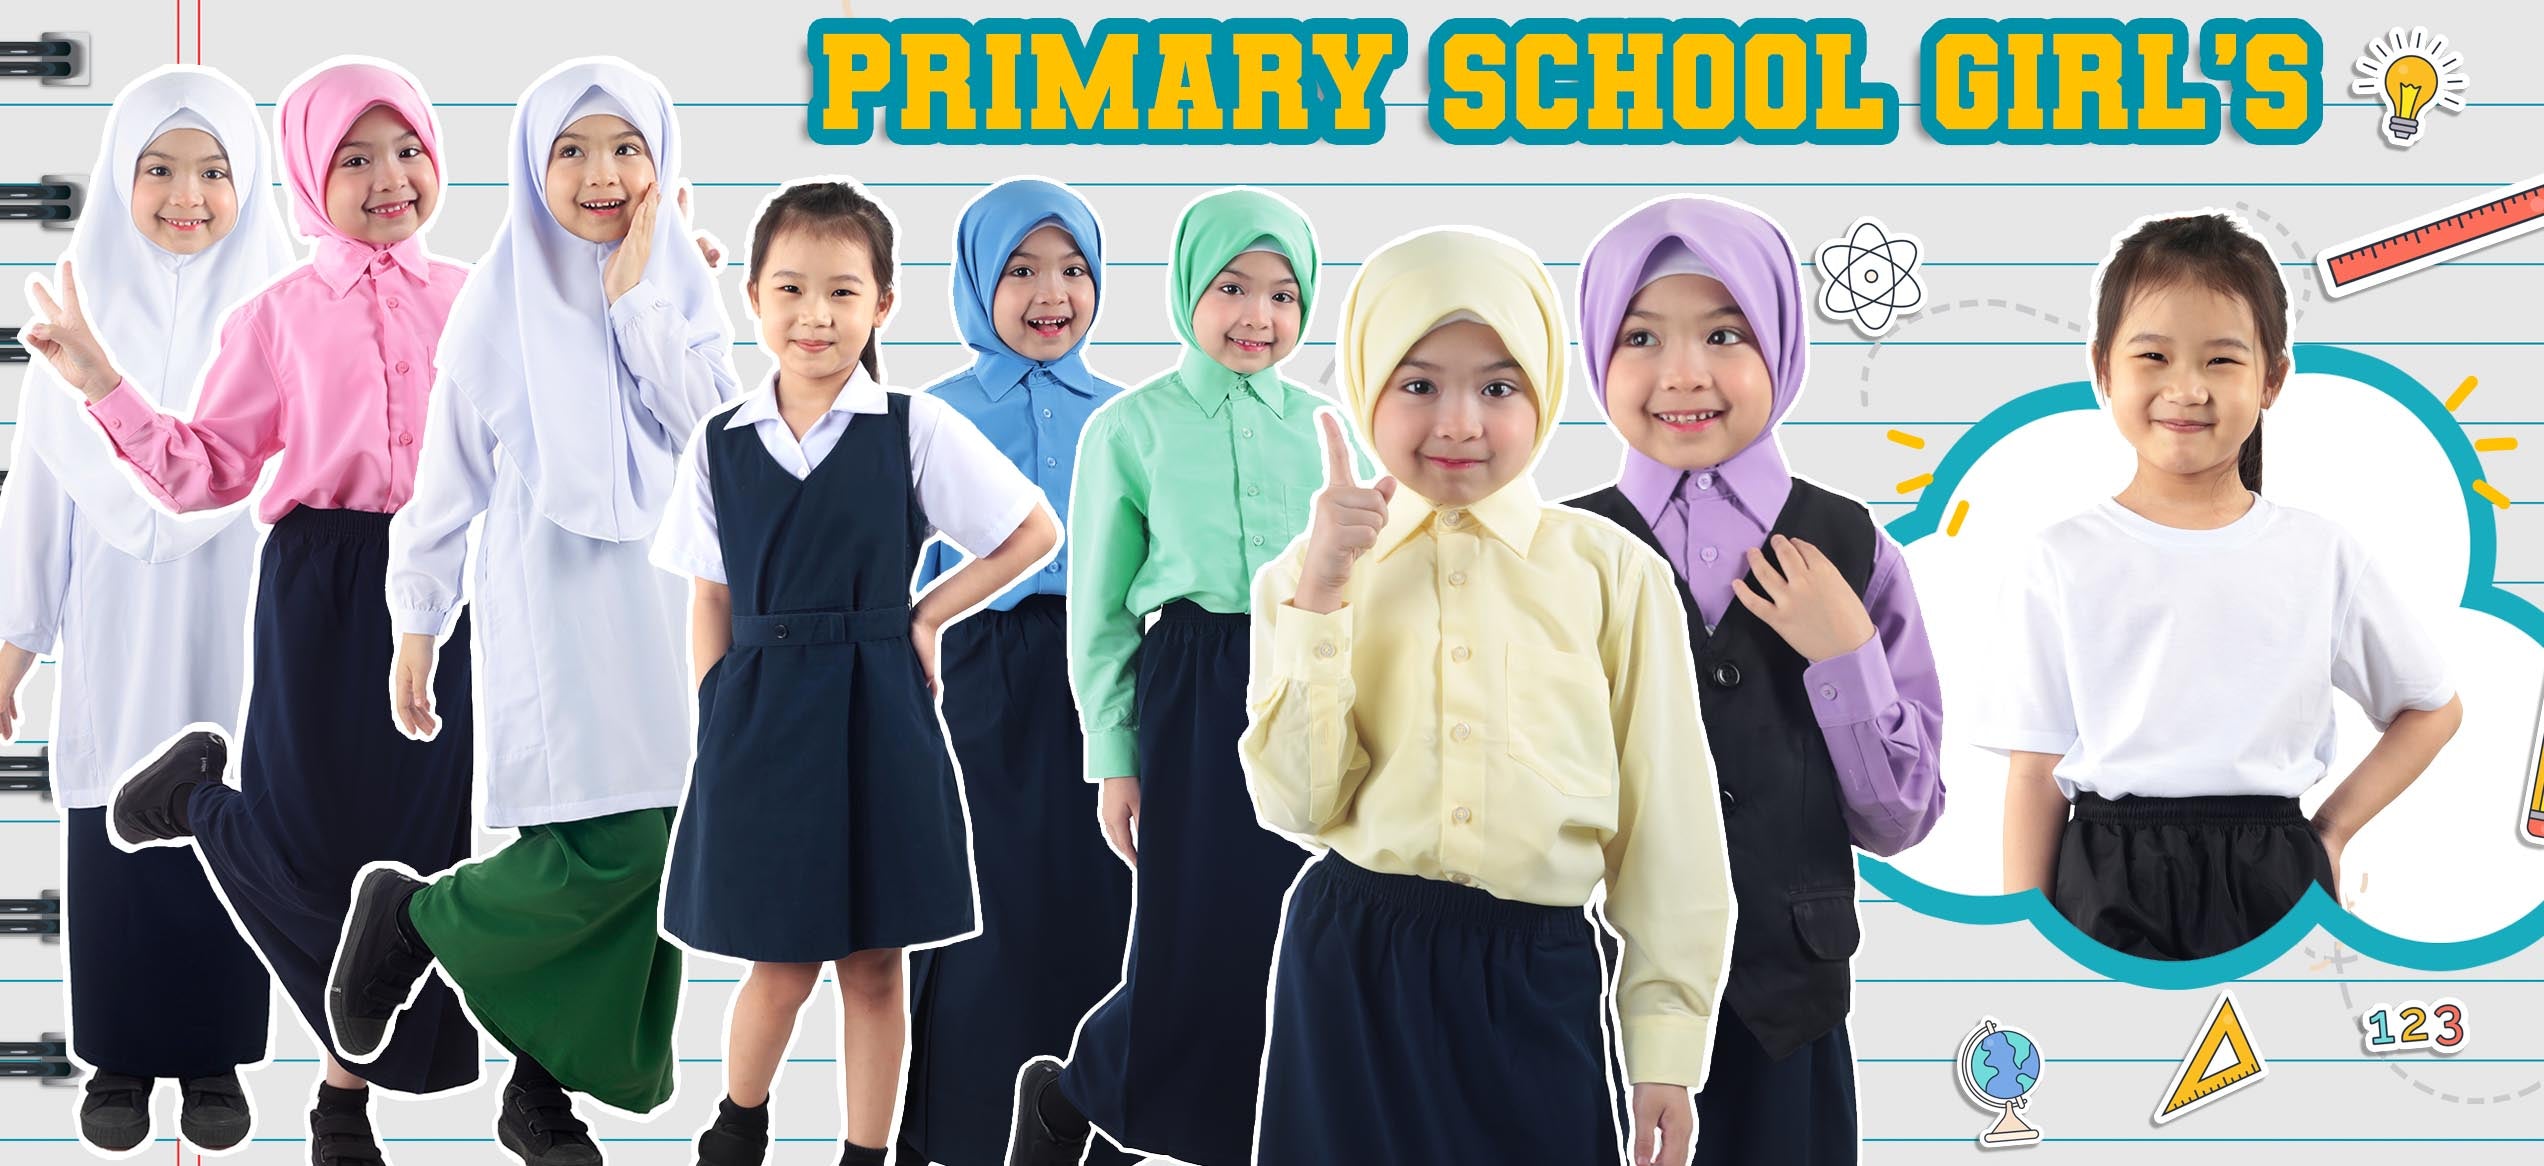 Primary School Girl's